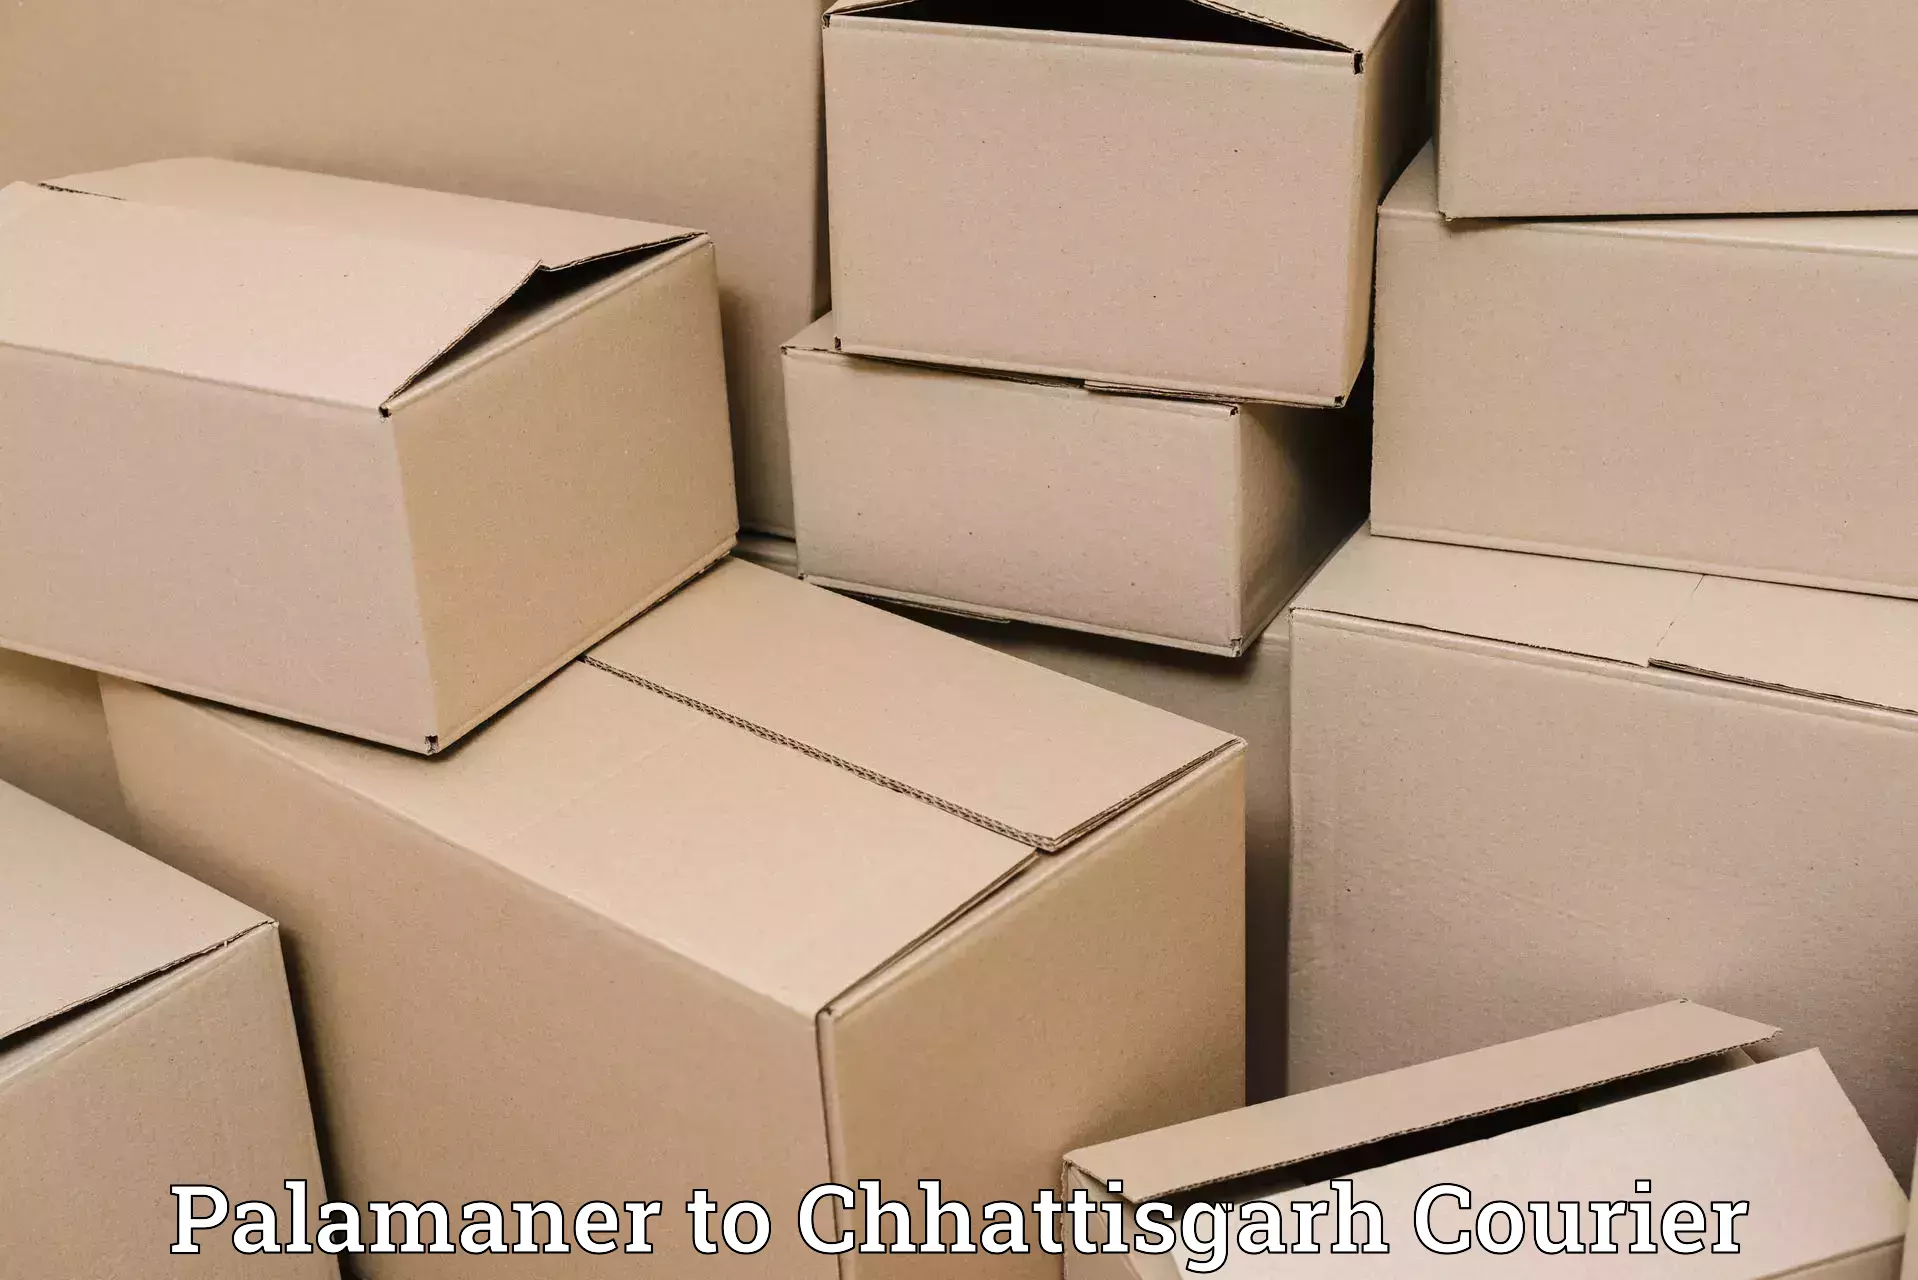 Package delivery network Palamaner to Wadrafnagar